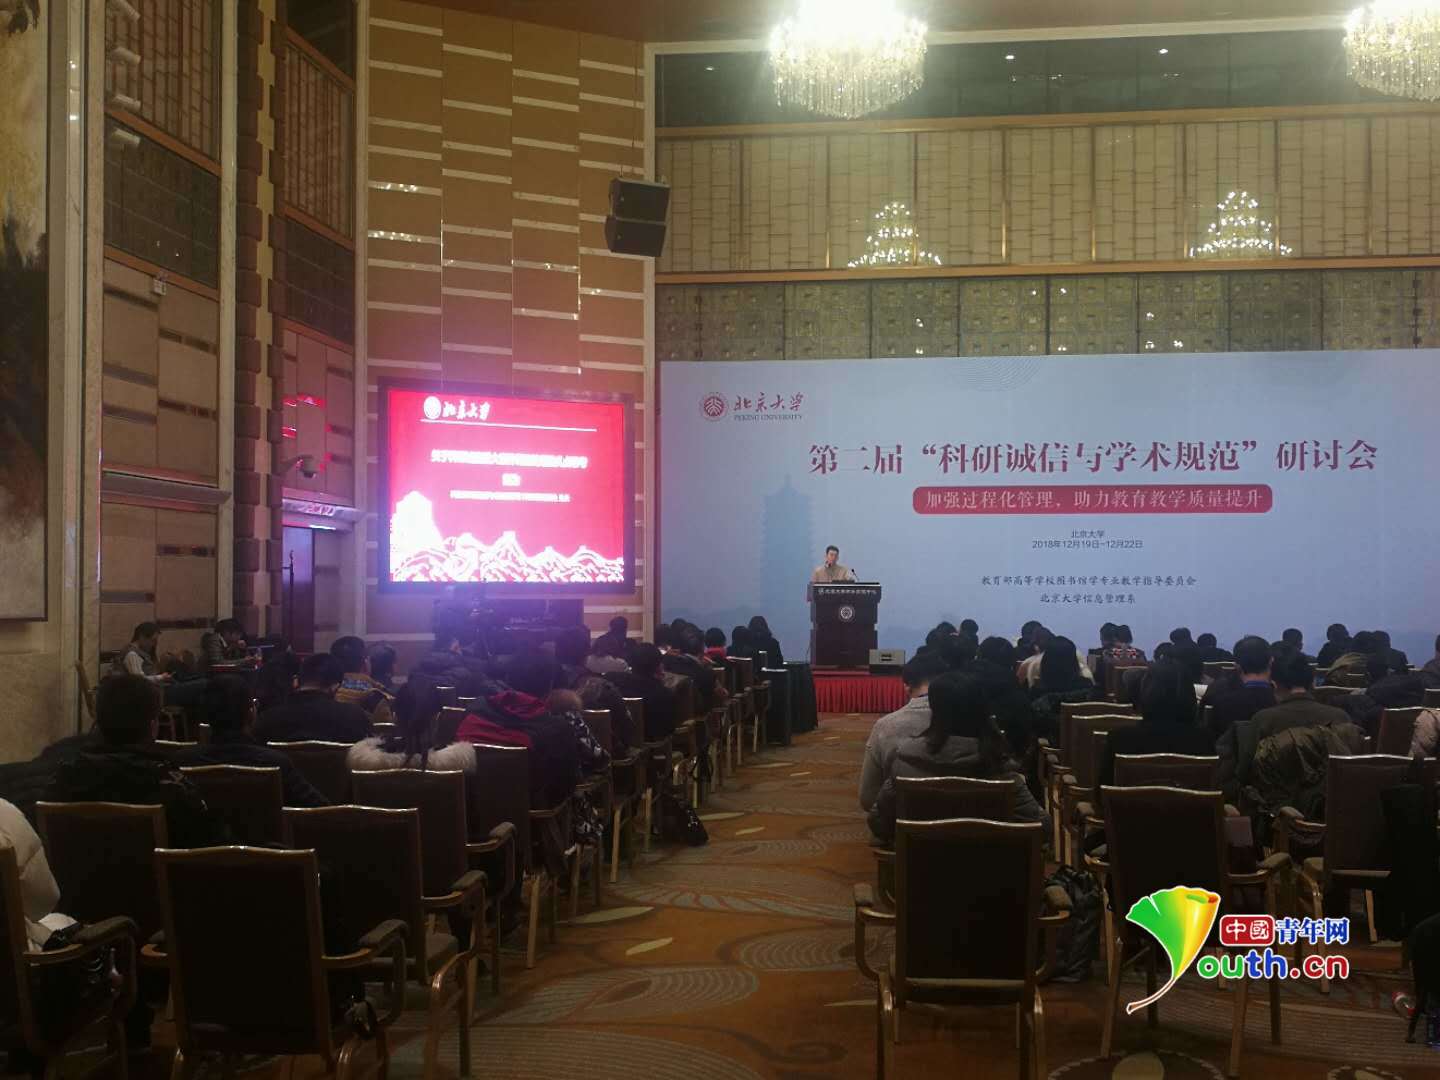 第二届 科研诚信与学术规范 研讨会在北京大学